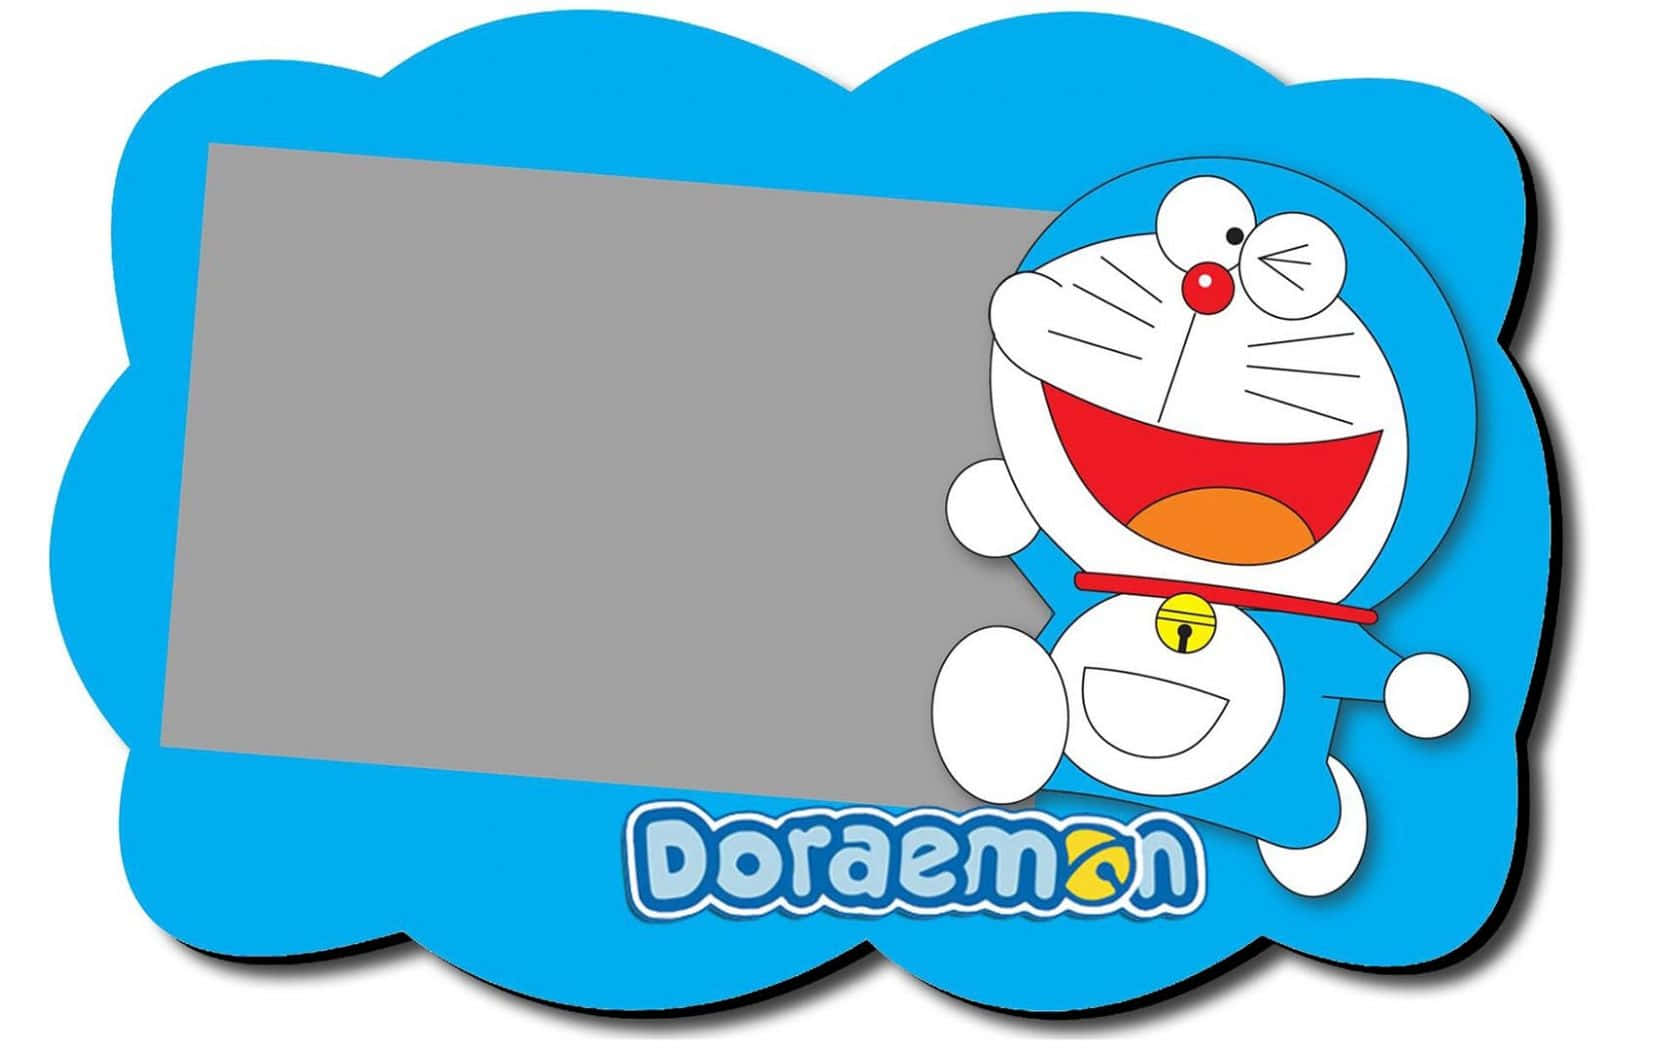 Diebeliebte Japanische Roboter-katze, Doraemon